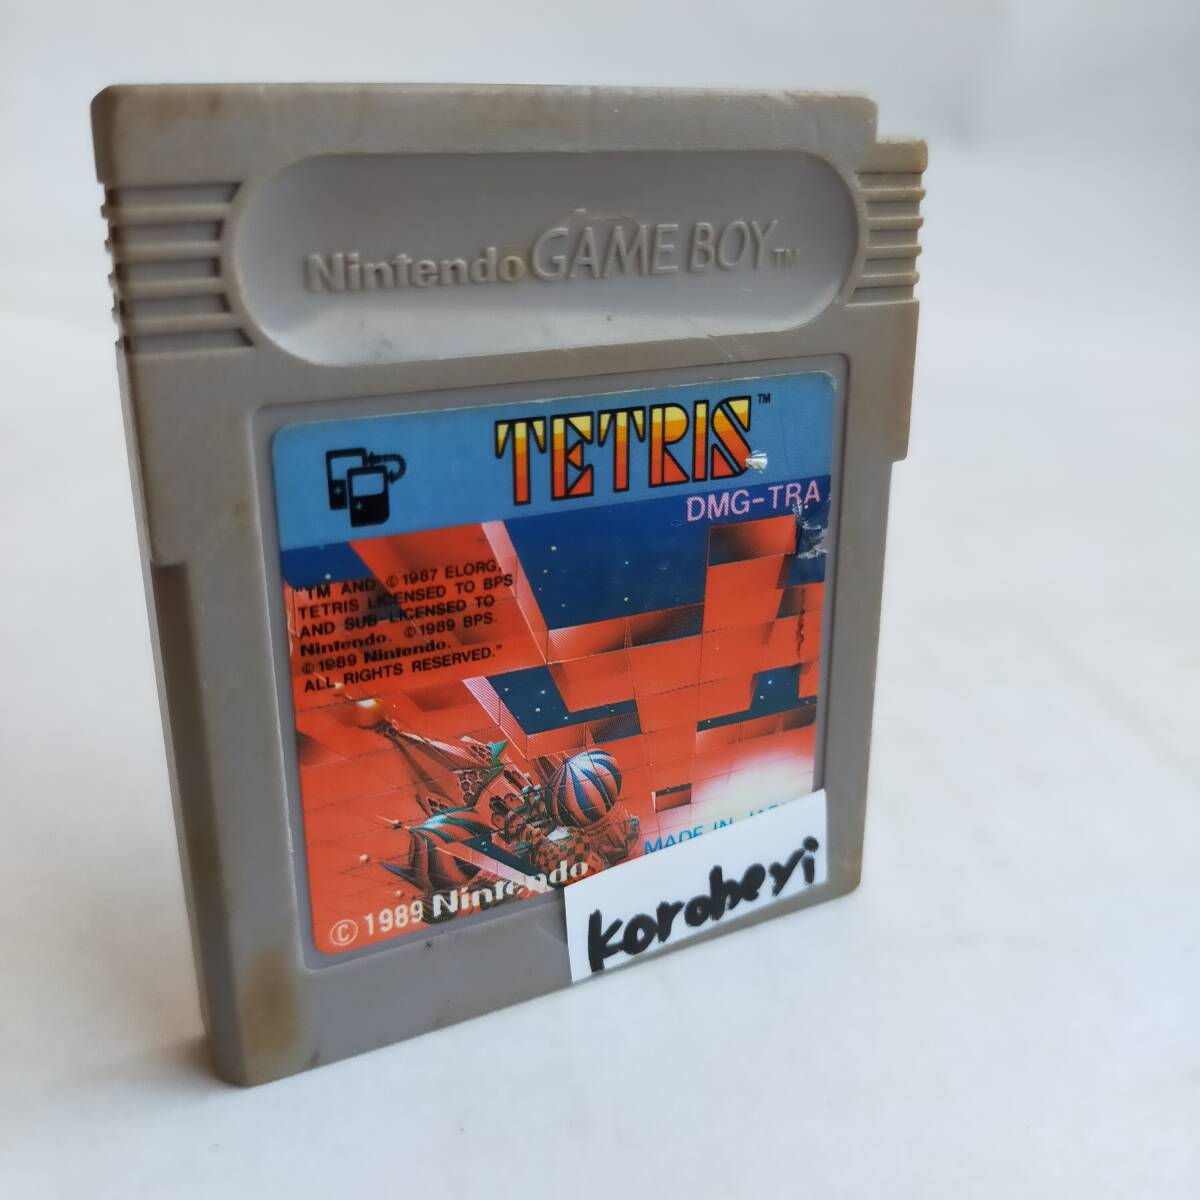 テトリス type-A BGM korobeyniki GameBoy ゲームボーイ 動作確認済・端子清掃済[GB8234_337]_画像3